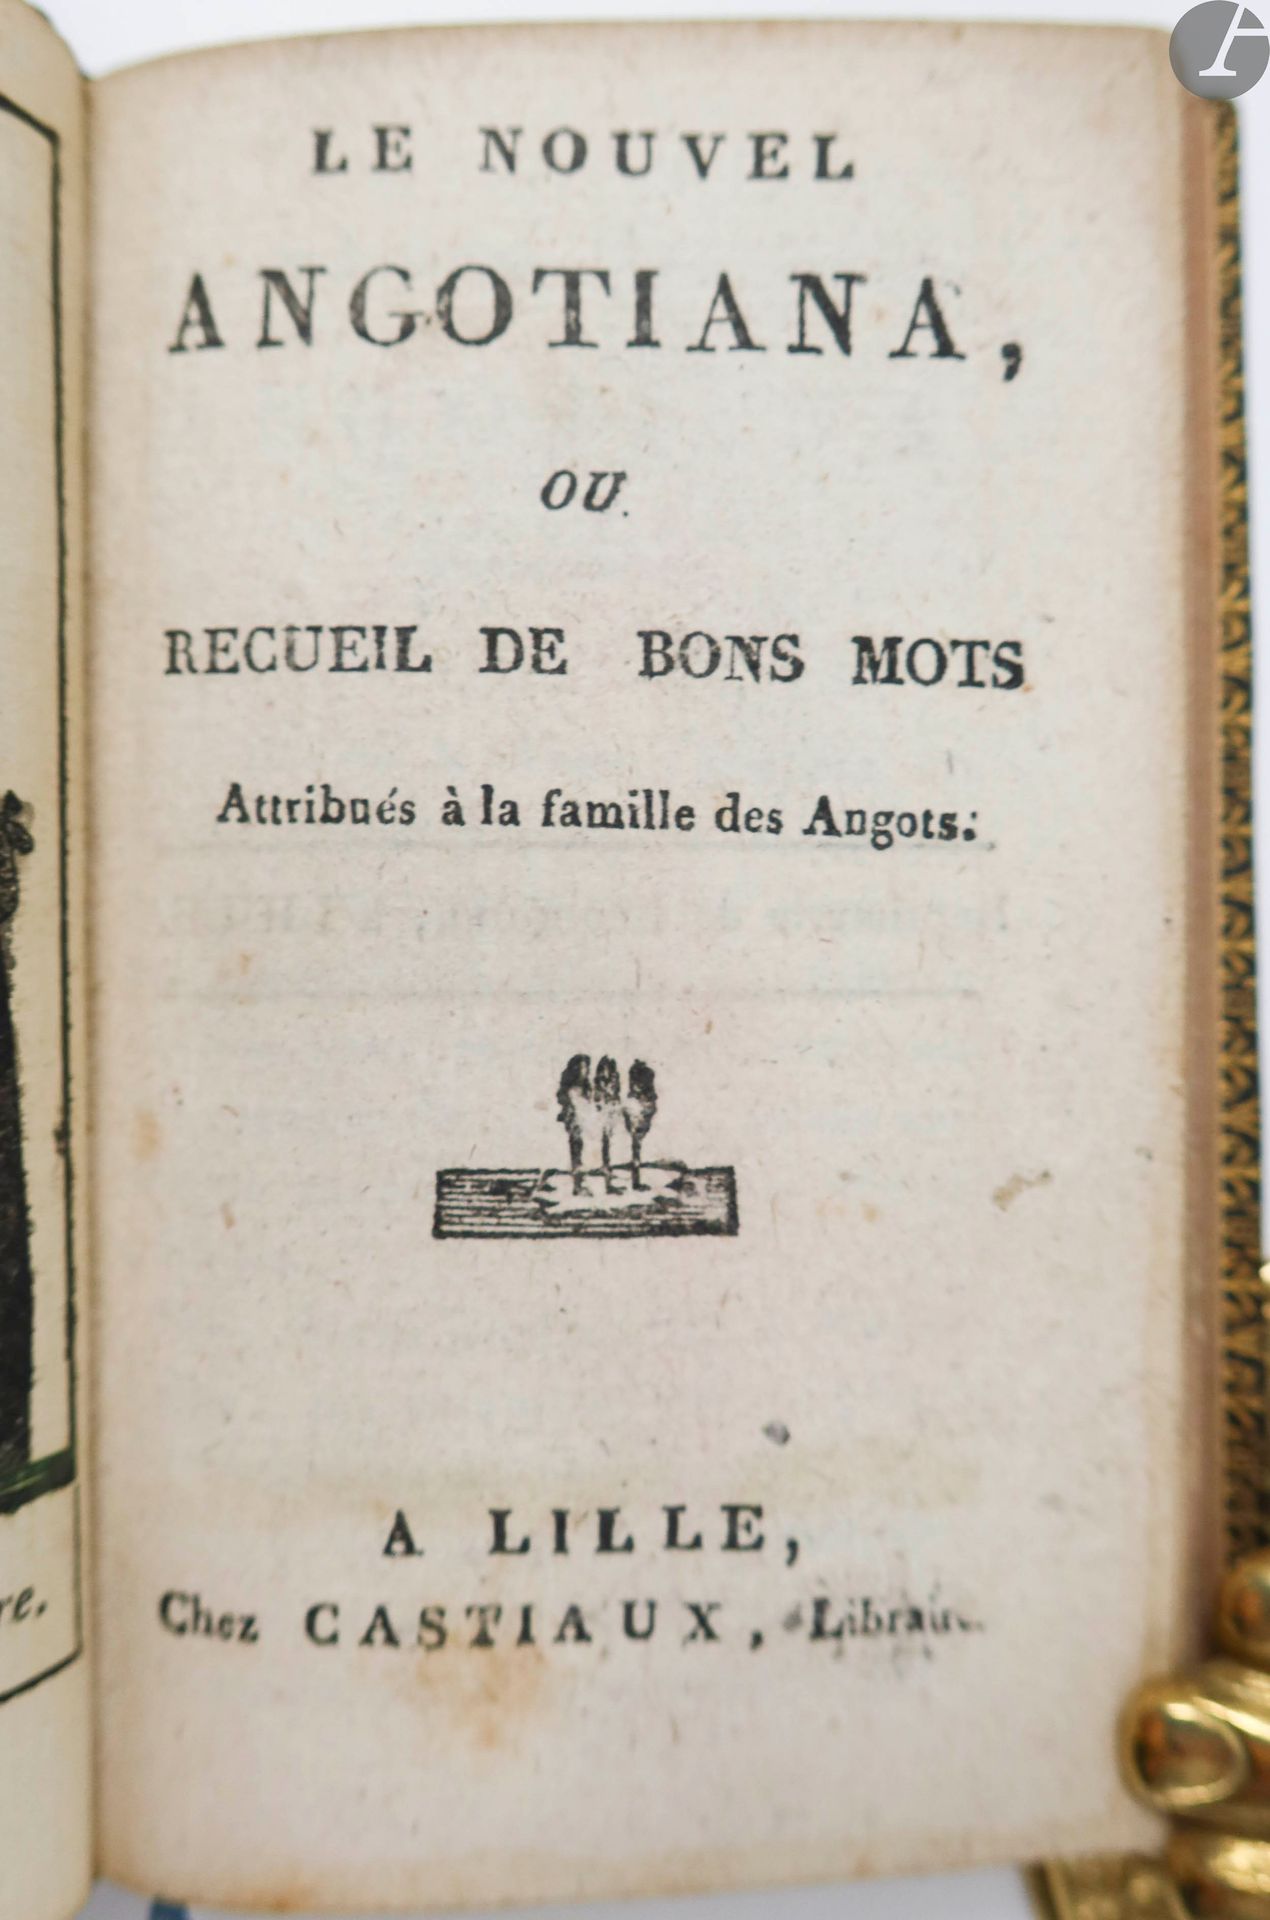 Null [ANA].
Le Nouvel Angotiana, ou recueil de bons mots Attribués à la famille &hellip;